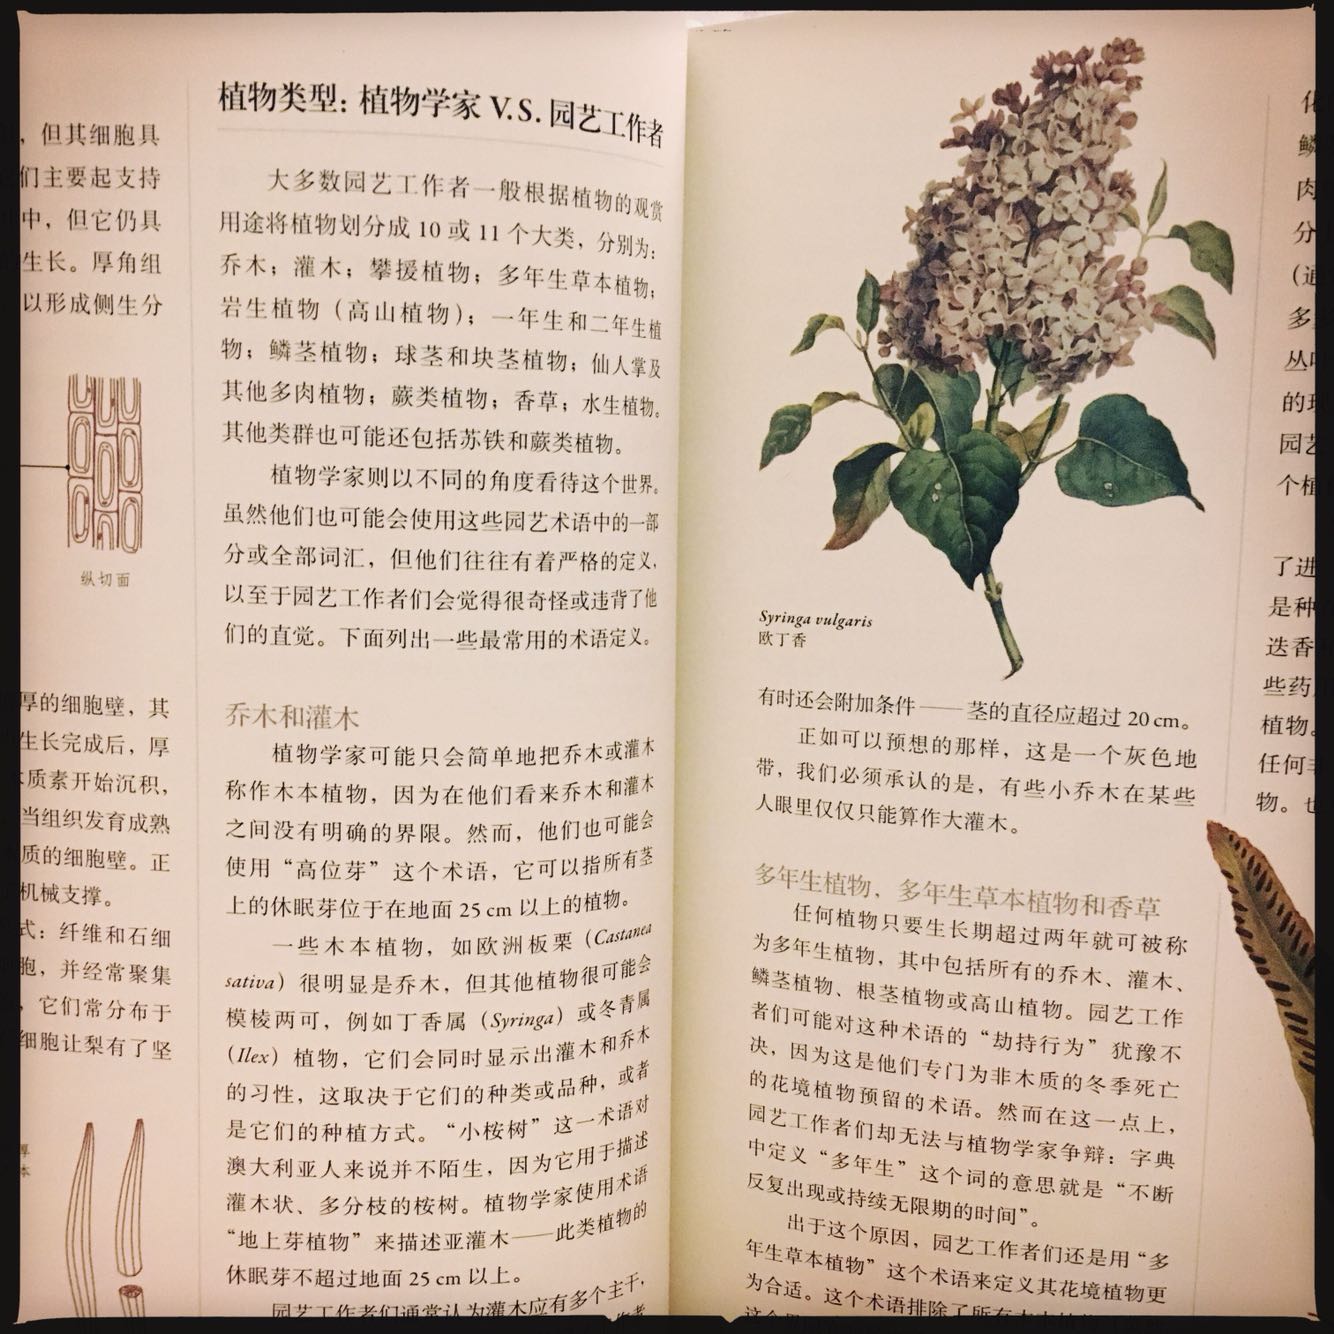 从园艺圈的视角解释植物学，很好读的一本植物学入门书，插图也漂亮。园艺爱好者读起来应该尤其会心的，推荐。